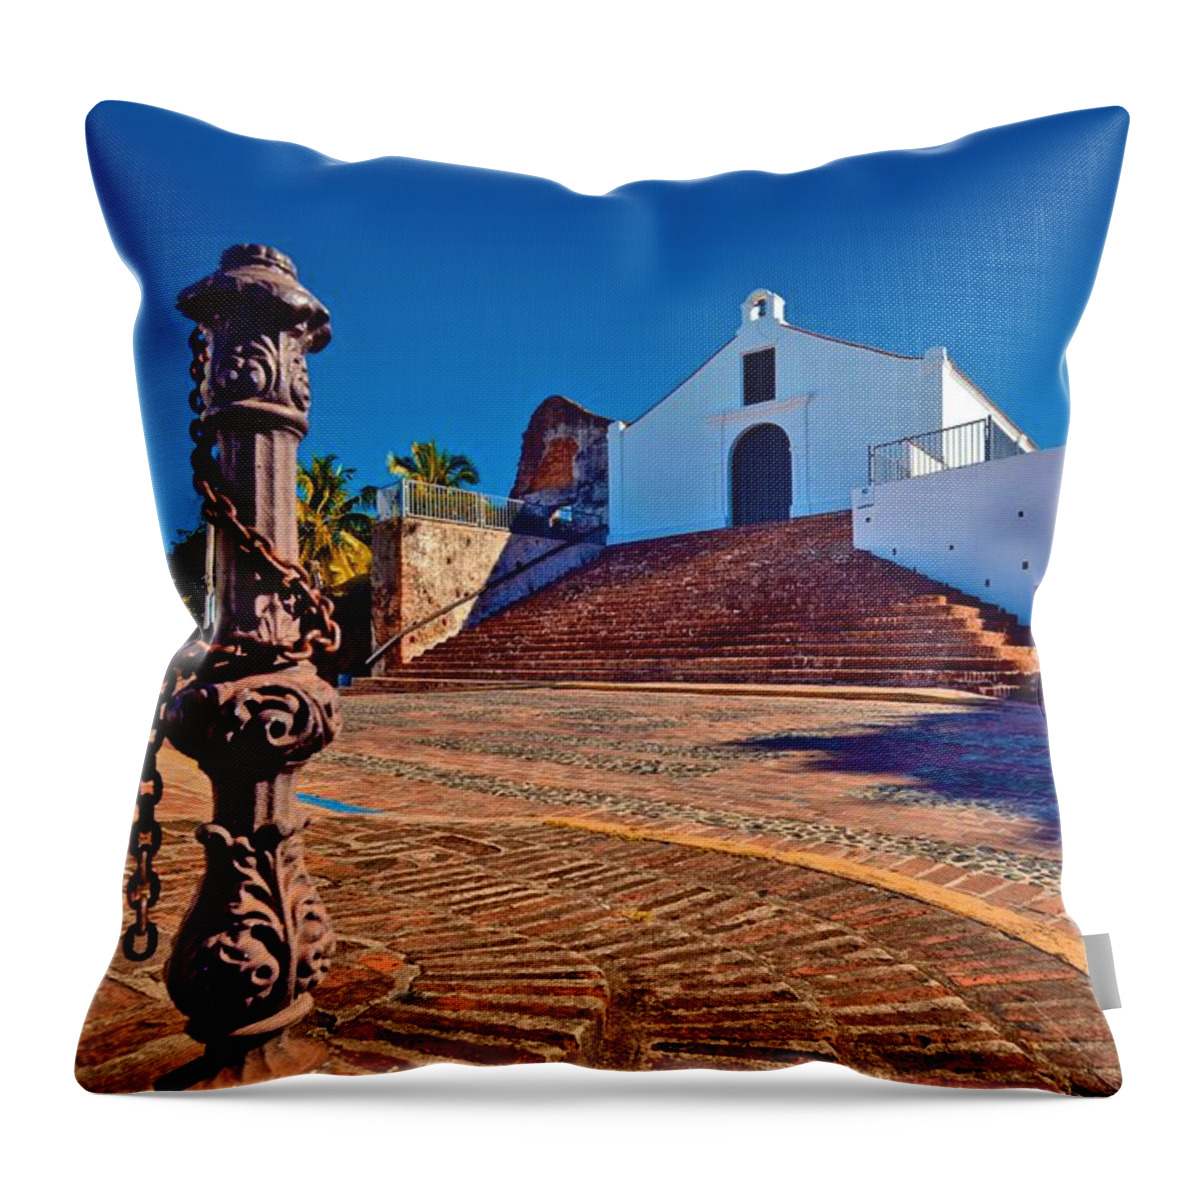 Church Throw Pillow featuring the photograph Porta Coeli Church by Ricardo J Ruiz de Porras